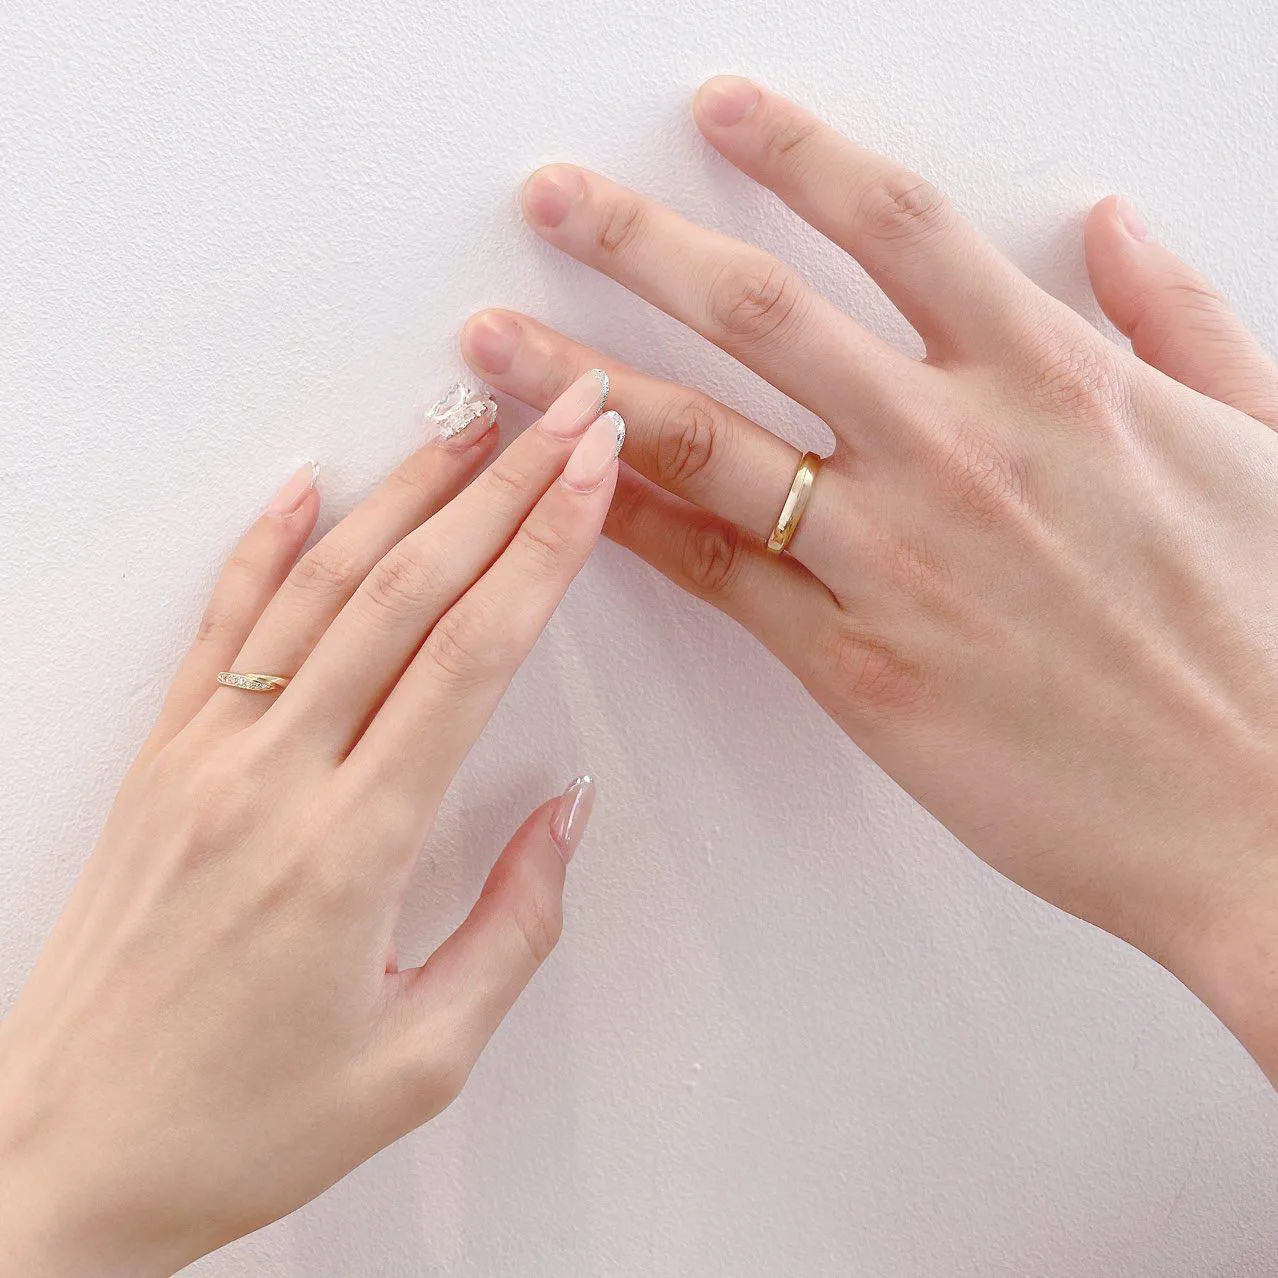 【写真を見る】SNSには結婚指輪をつけた二人の手の写真を投稿